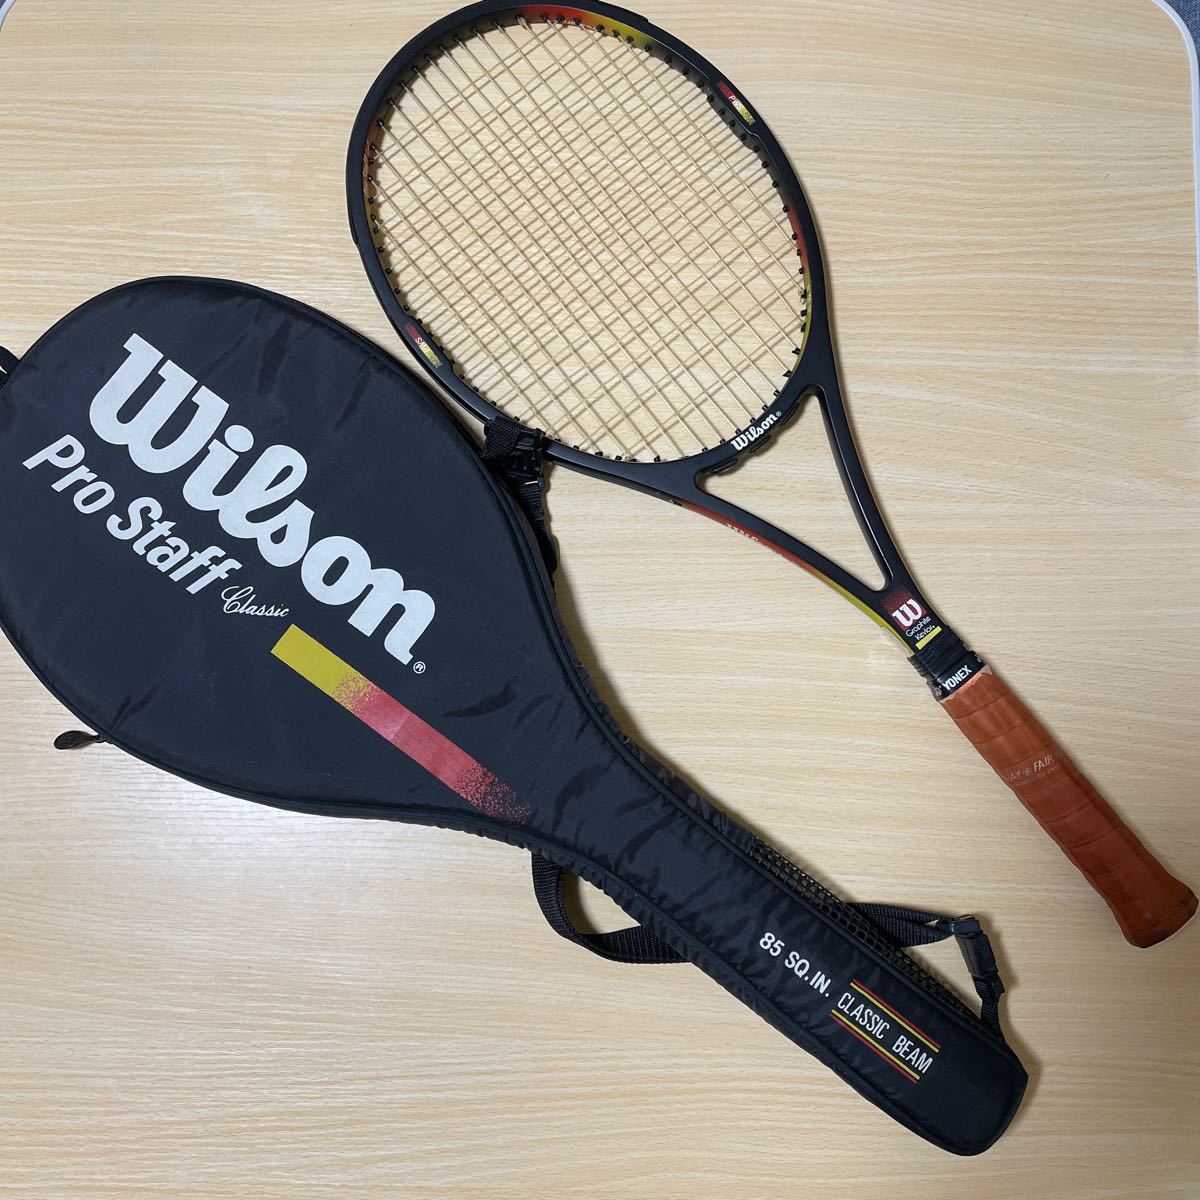 Wilson プロスタッフ クラシック 硬式テニスラケット テニスラケット